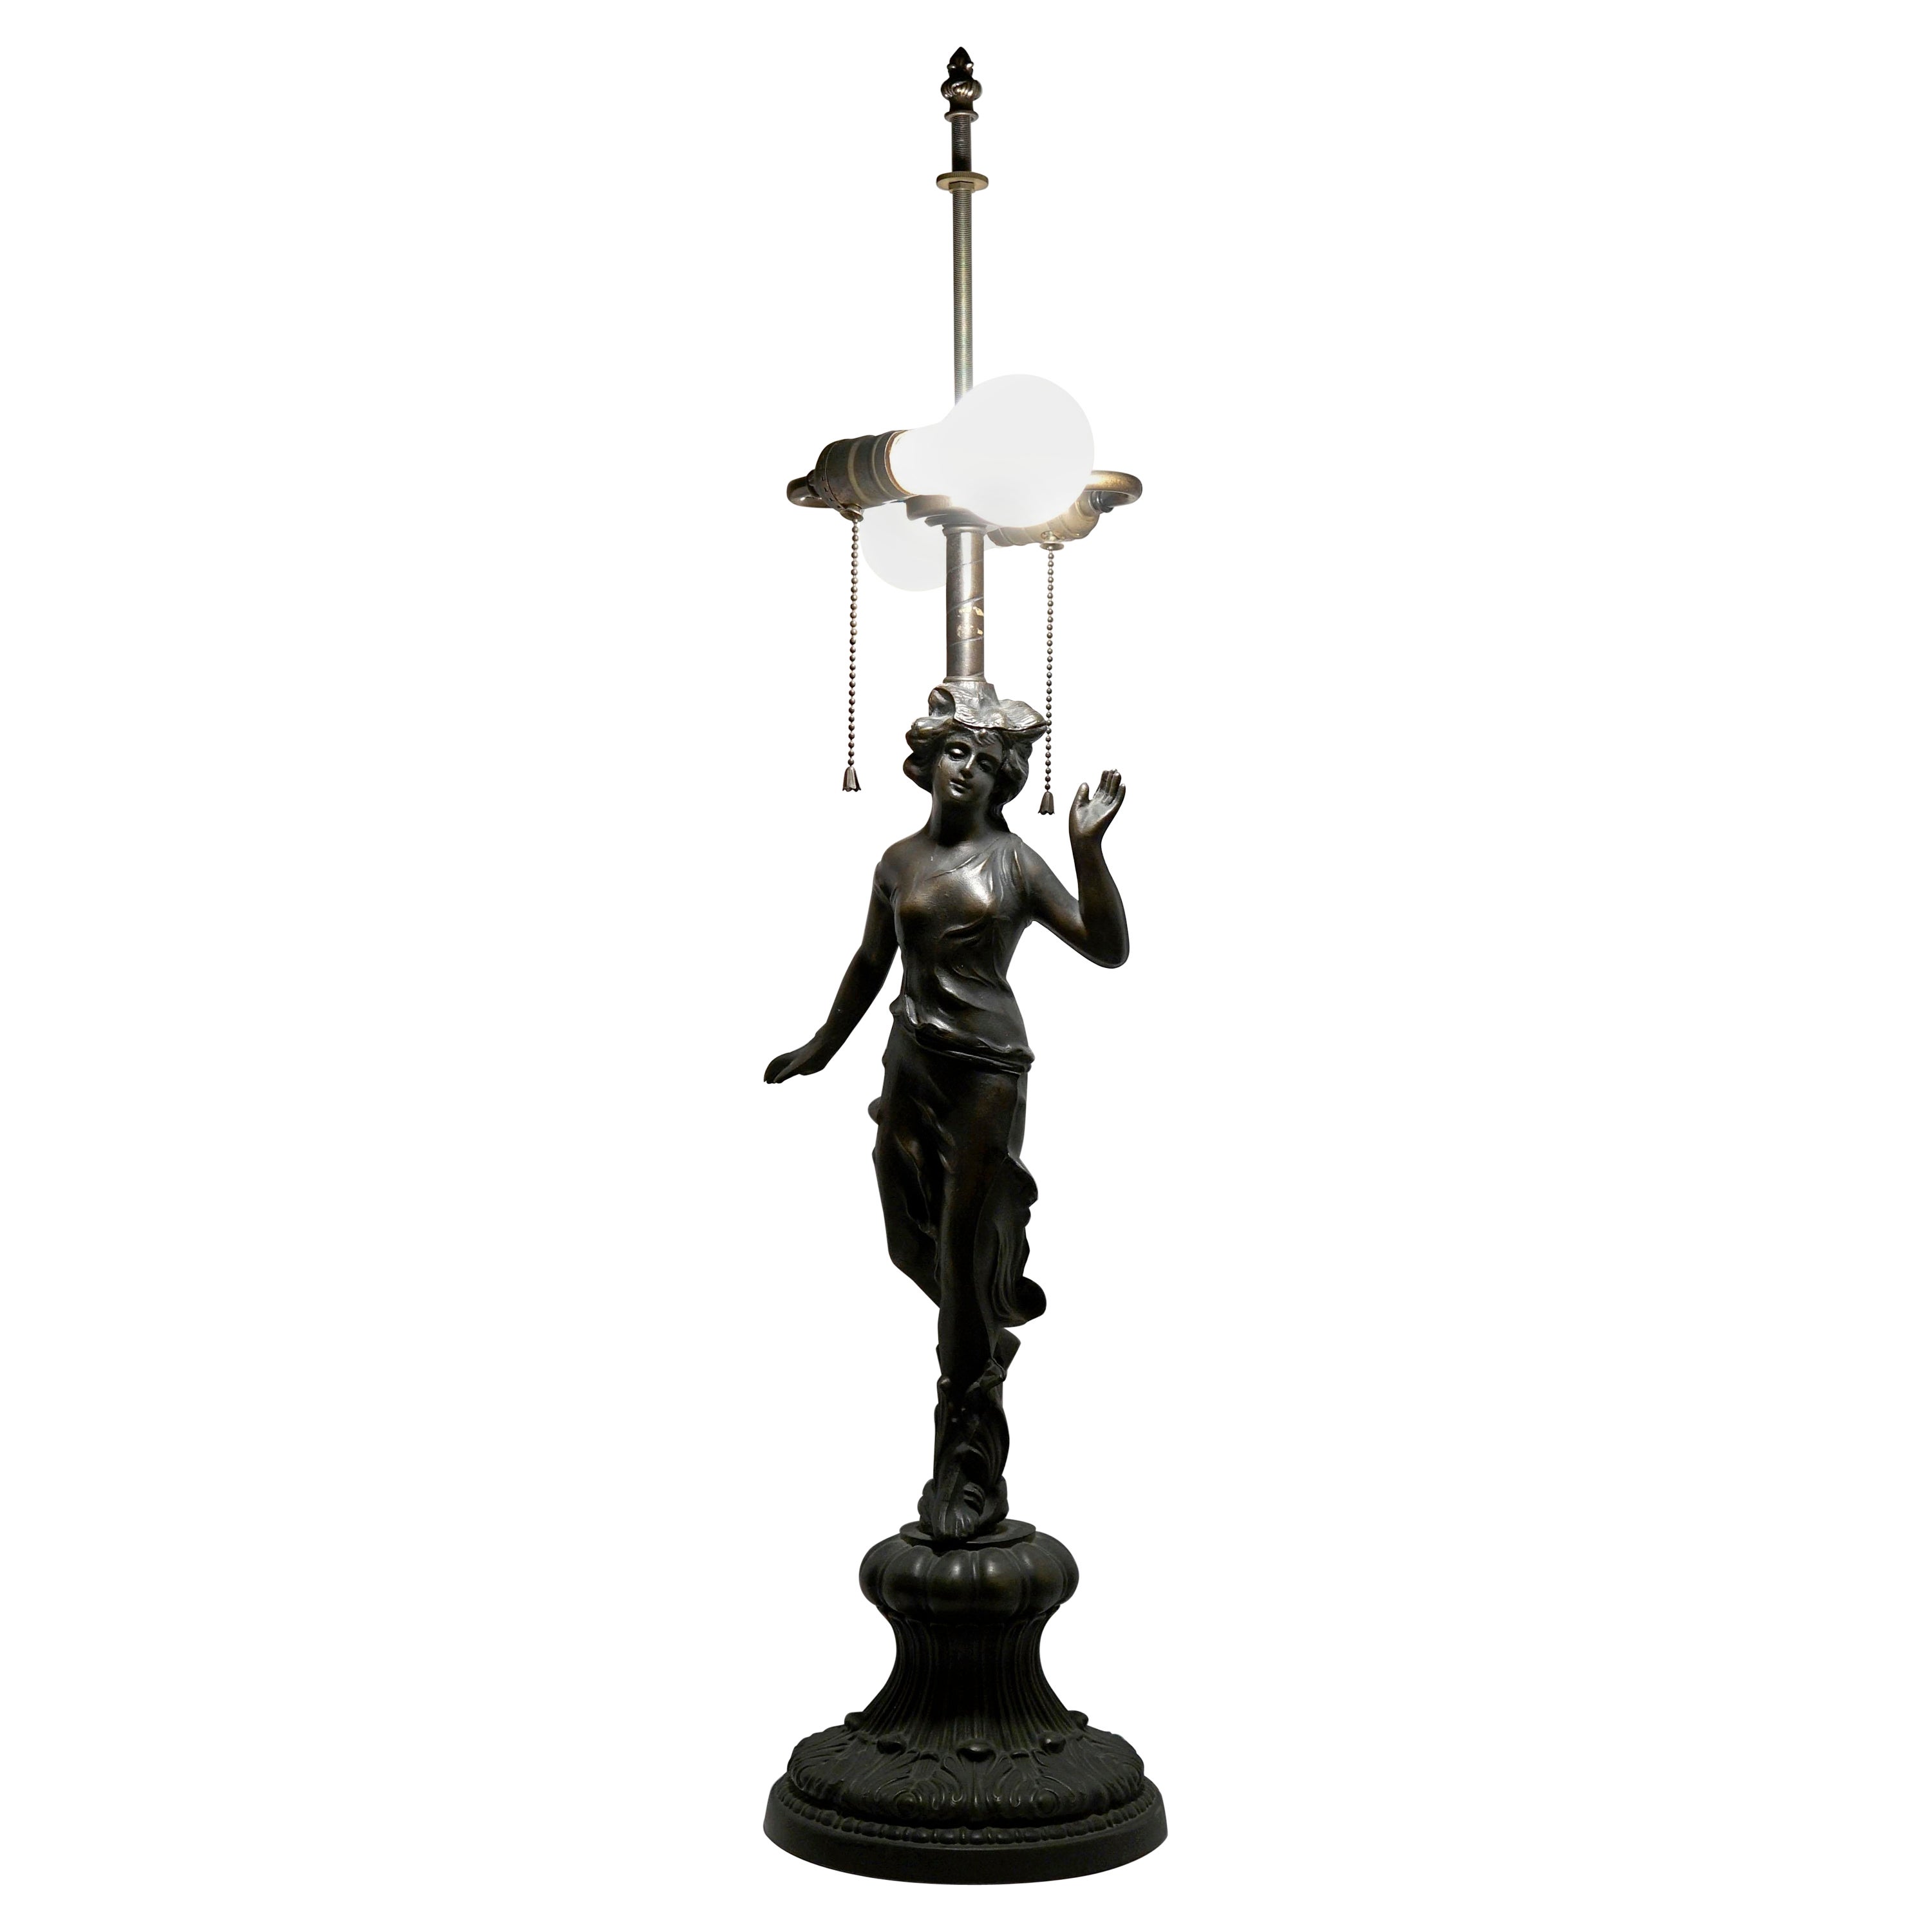 1920s Art Nouveau Bronze Verdigris Figural Table Lamp with Dual Socket